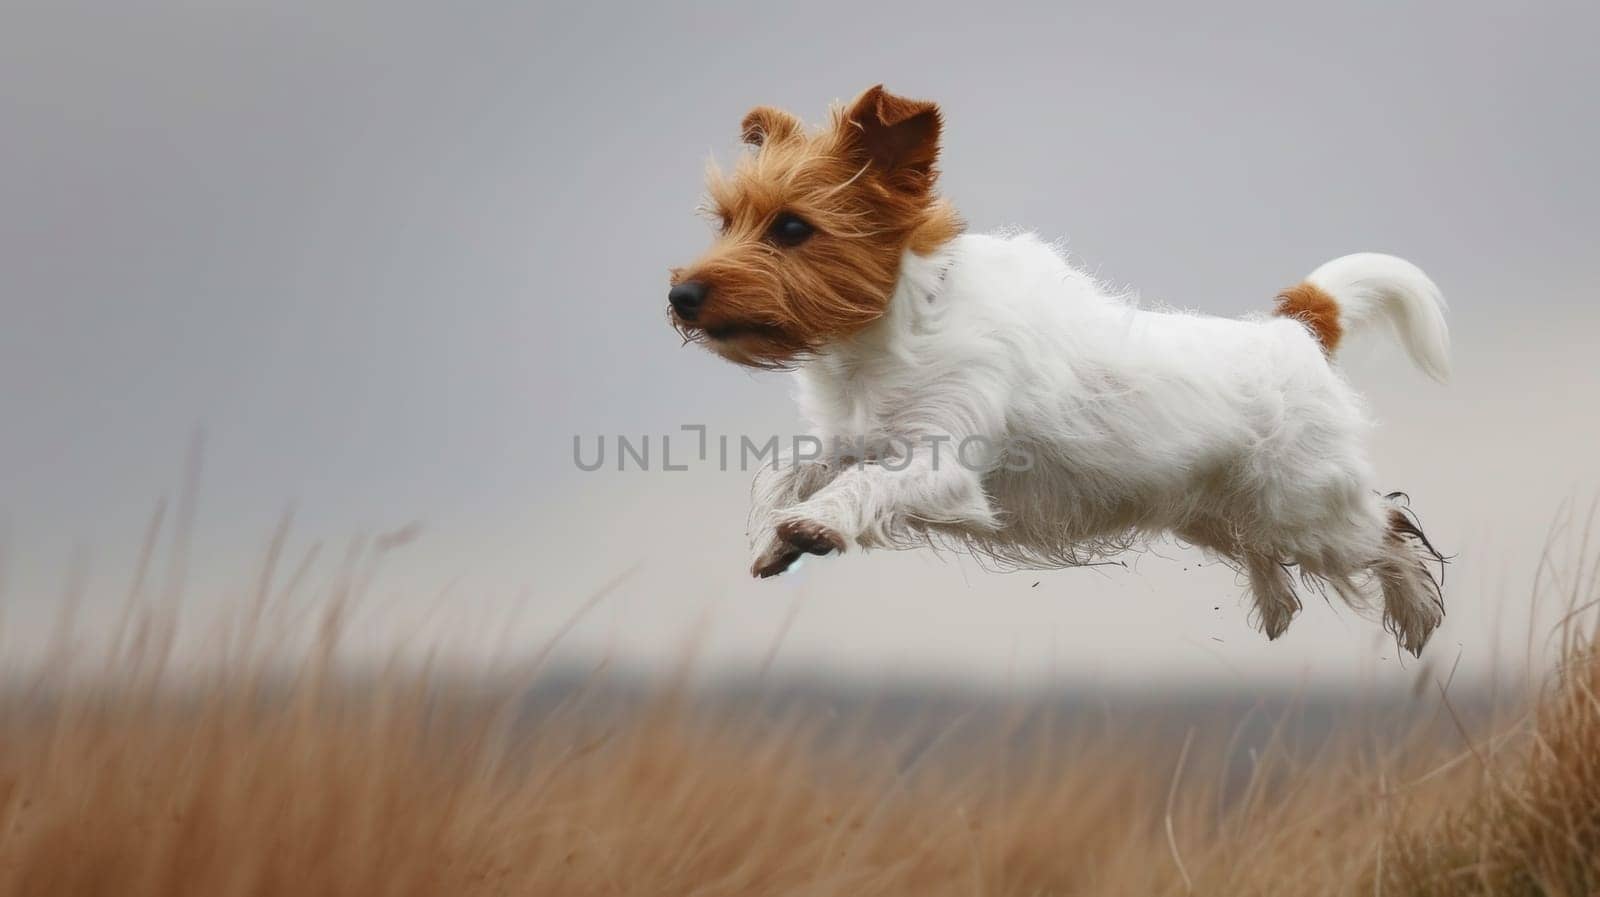 A small dog running through a field of tall grass